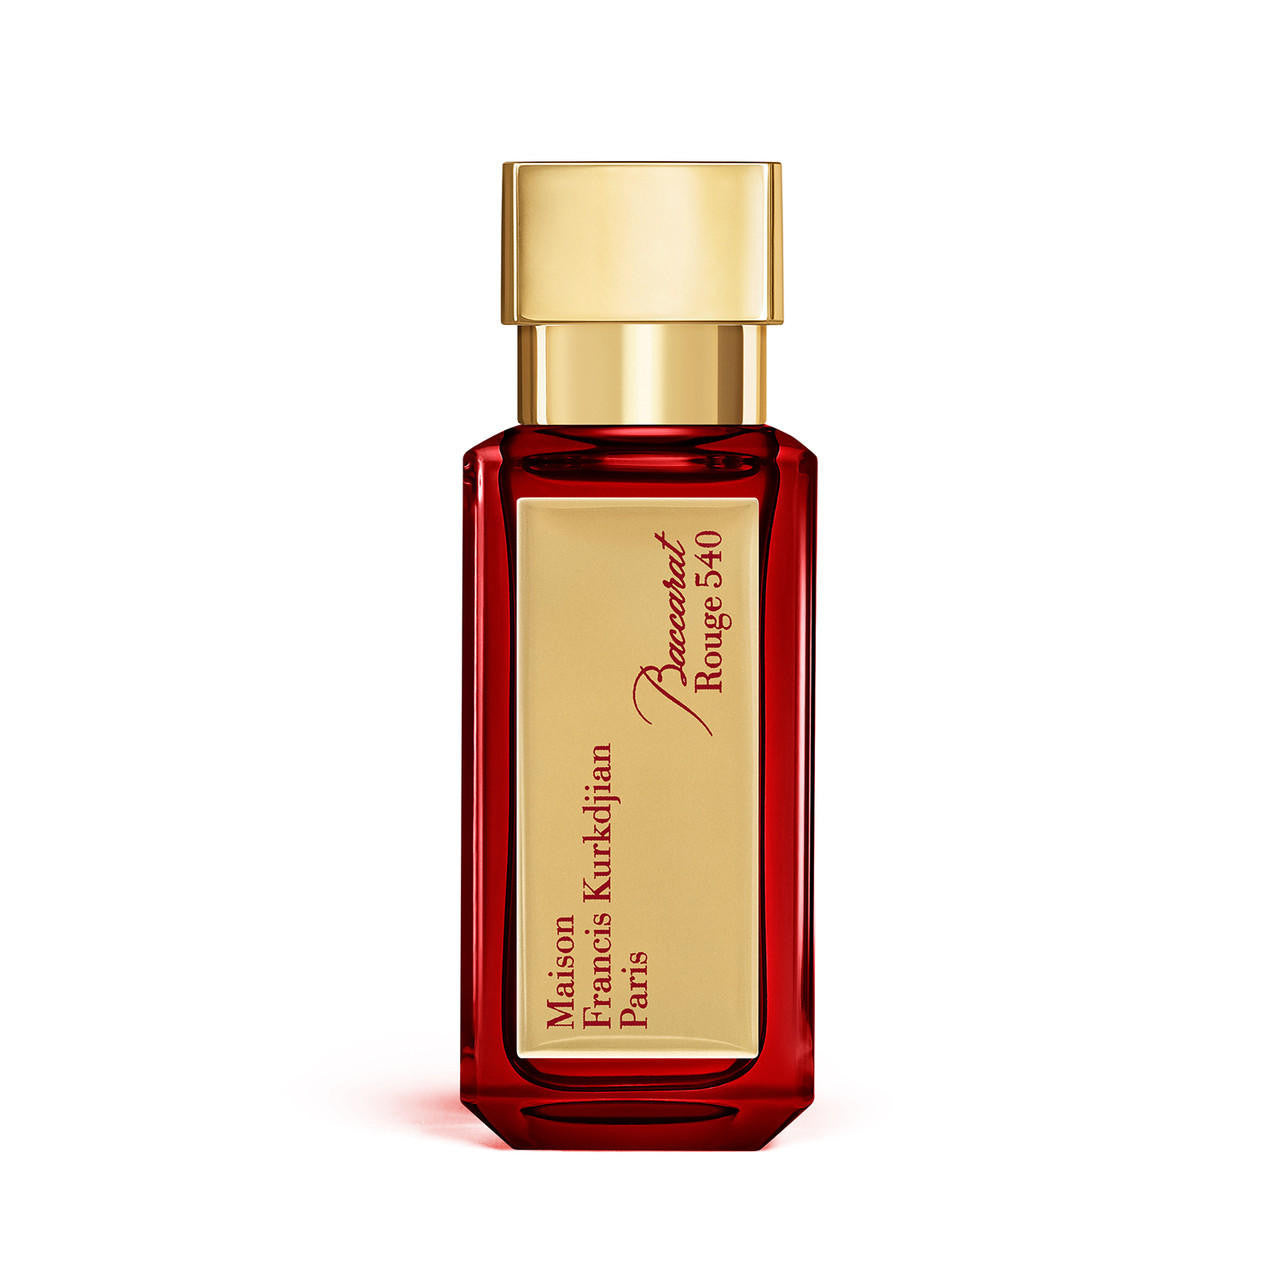  Maison Francis Kurkdjian Baccarat ROUGE 540 Extrait de Parfum 35ml 